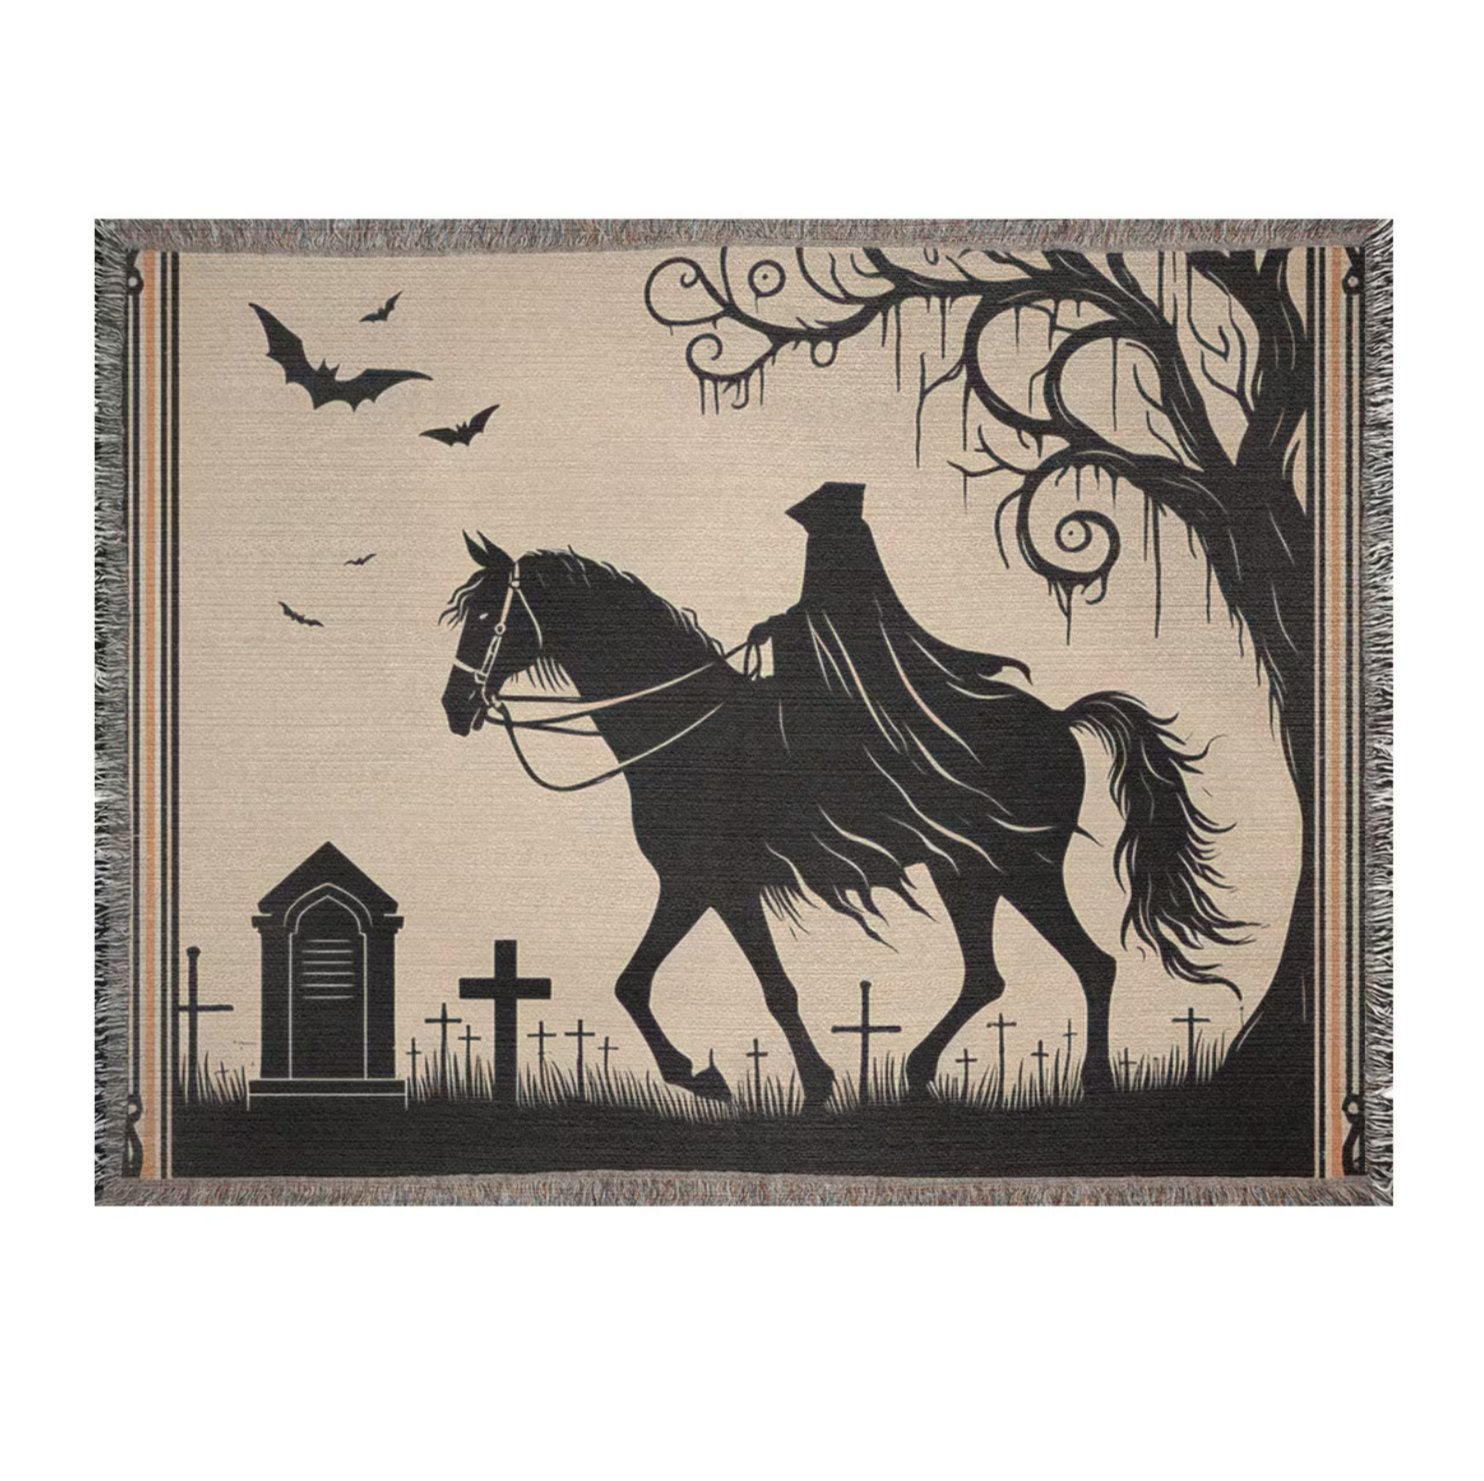 Headless Horseman Woven Blanket Tapestry ThrowVTZdesigns52x37 inchPhotoblanketBlanketsforest